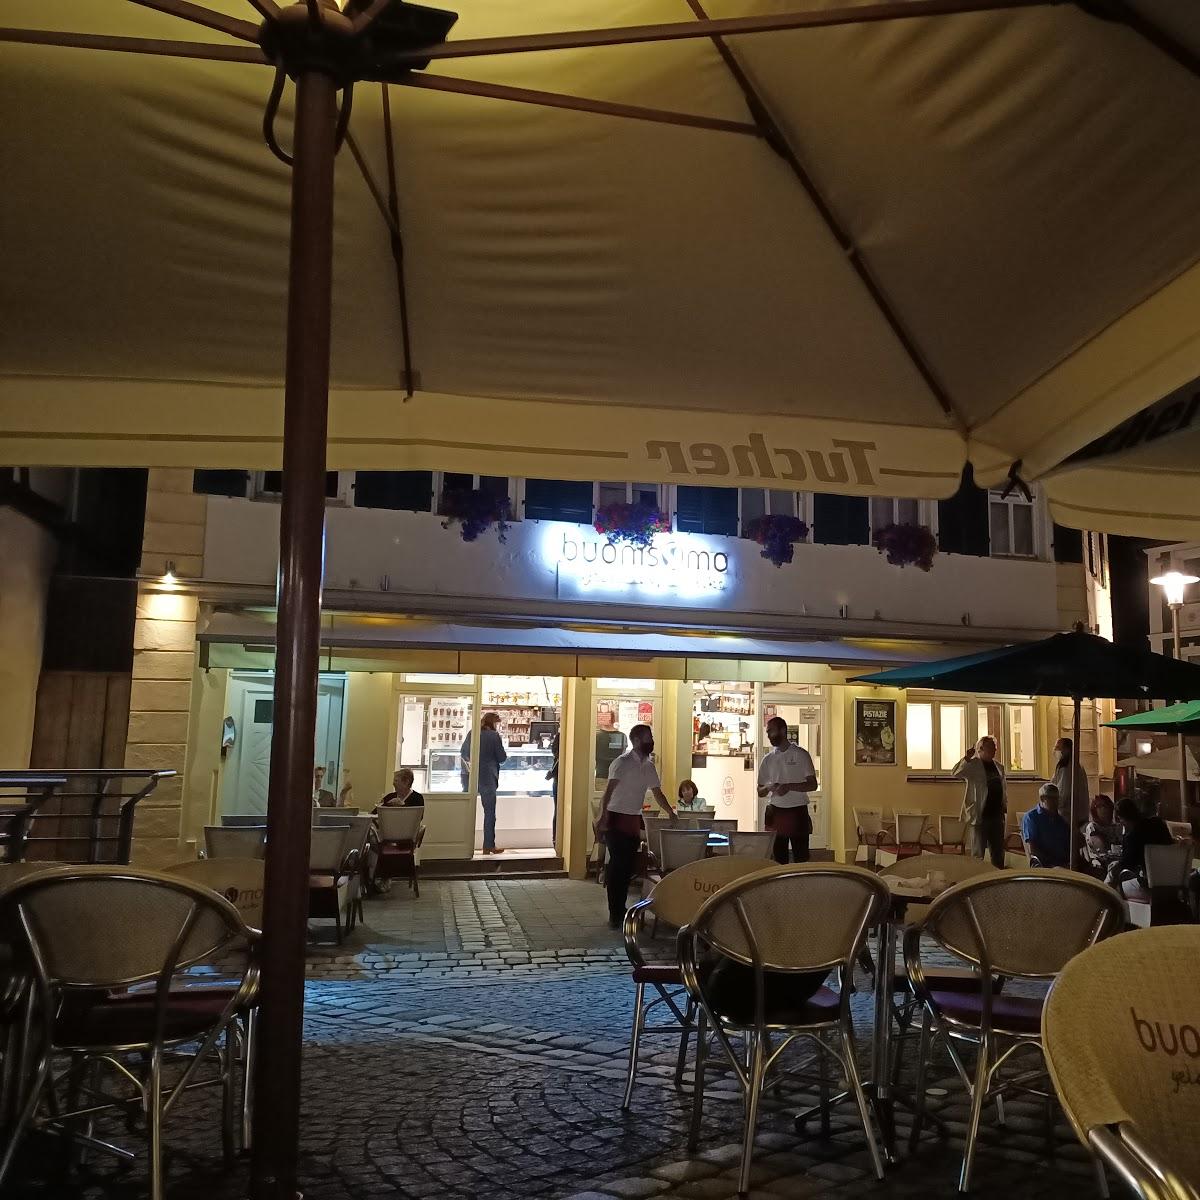 Restaurant "Buonissimo  | Italienische Eis-Manufaktur" in Schwabach